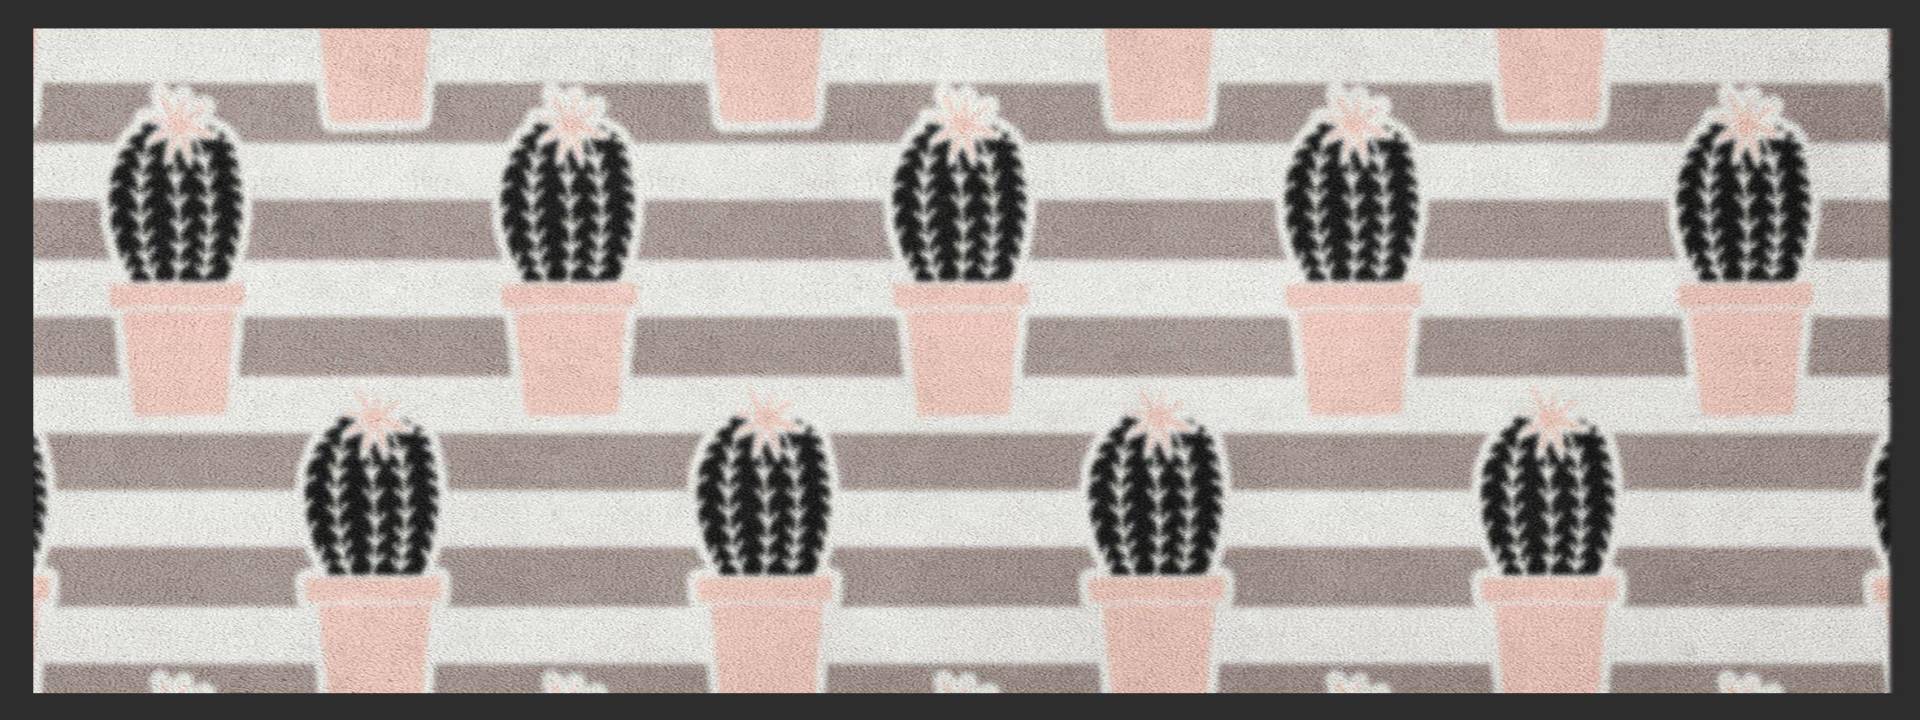 Küchenteppich Kaktus 4650 von Fussmattenwelt